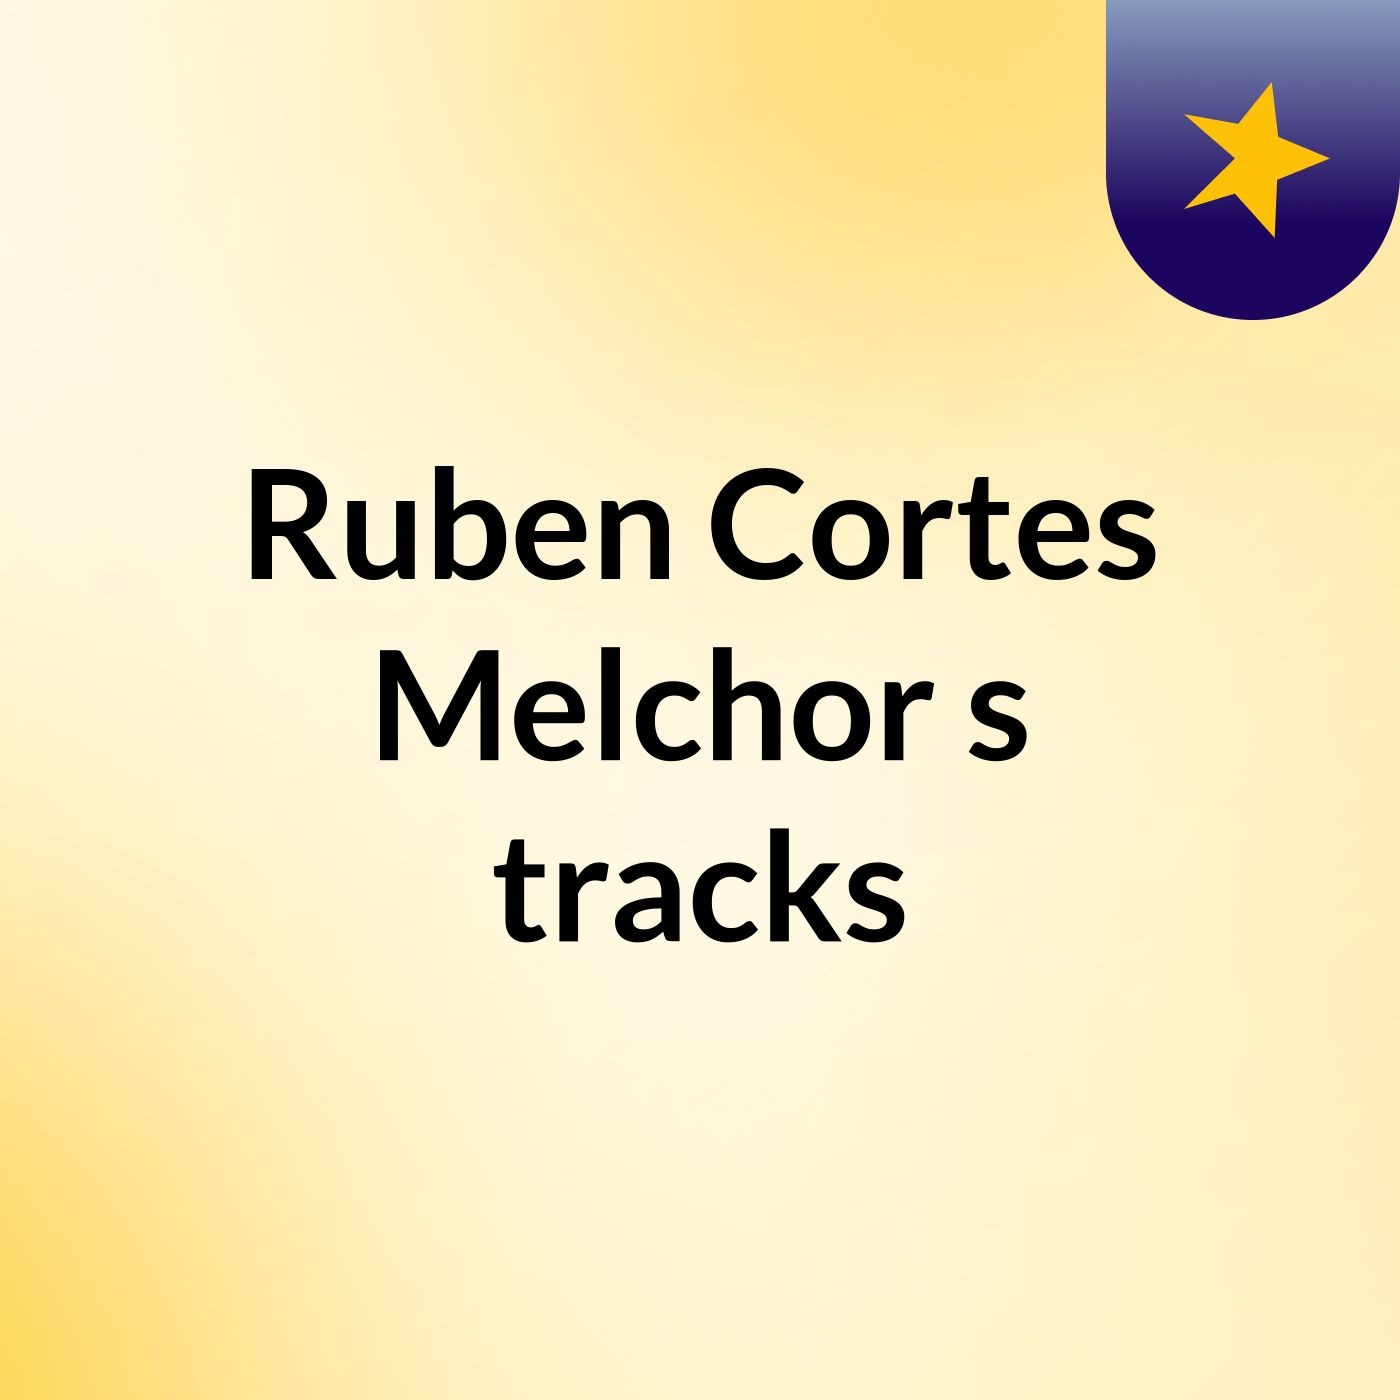 Ruben Cortes Melchor's tracks